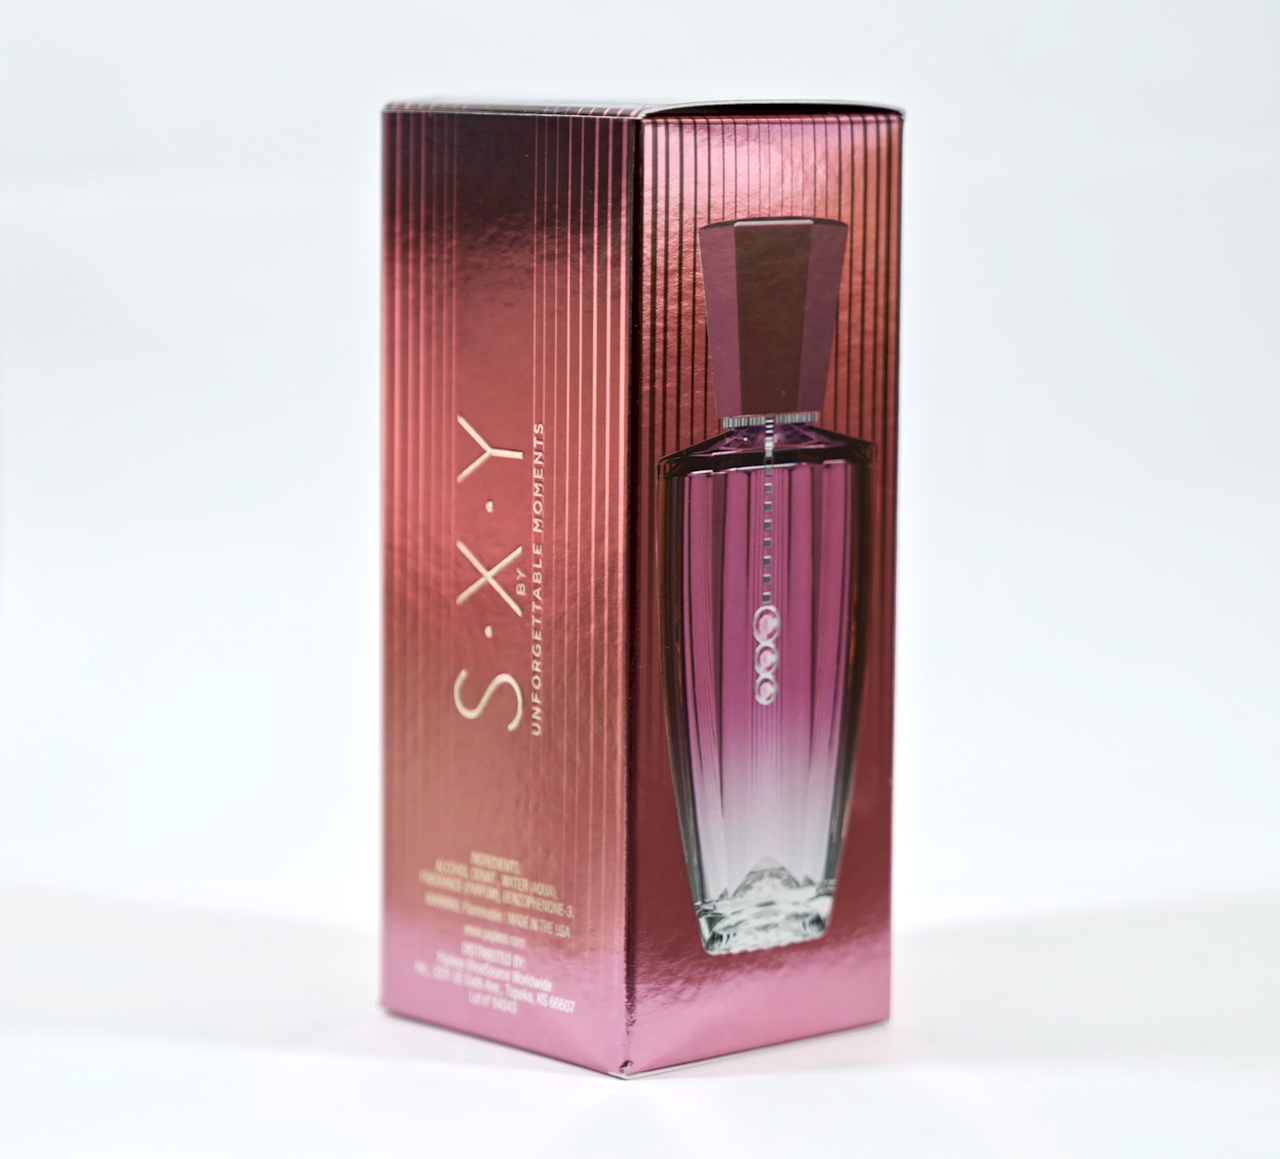 SXY by Unforgettable Moments Fragrance For Women Eau De Toilette Spray ...